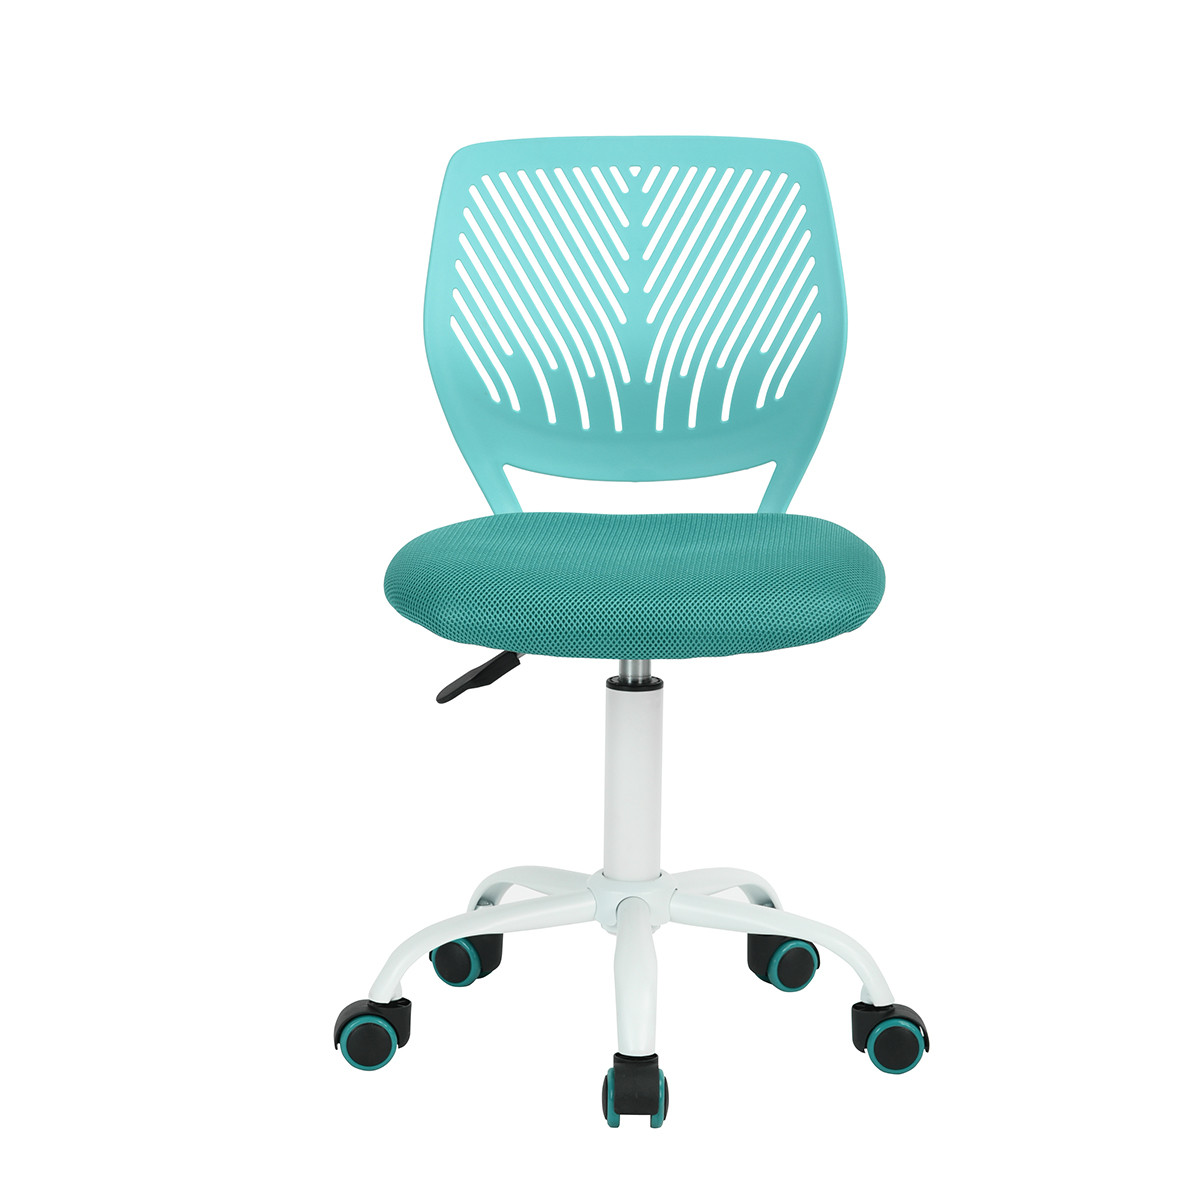 Chaise de bureau pour enfant bleu turquoise à roulettes